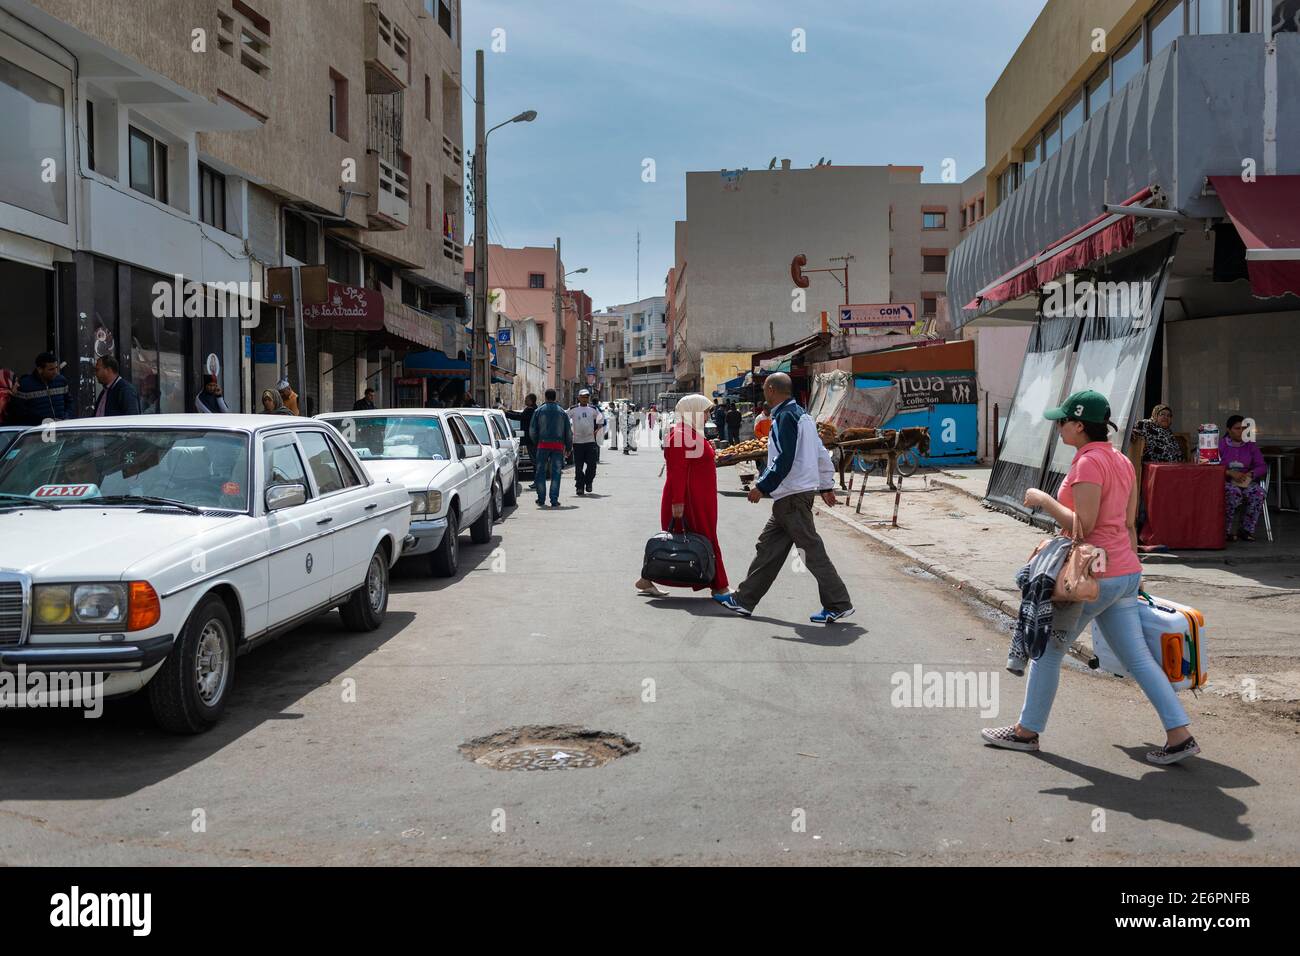 El Jadida, Maroc - 16 avril 2016: Scène de rue dans a dans la ville d'El Jadida, avec des gens traversant une rue. Banque D'Images